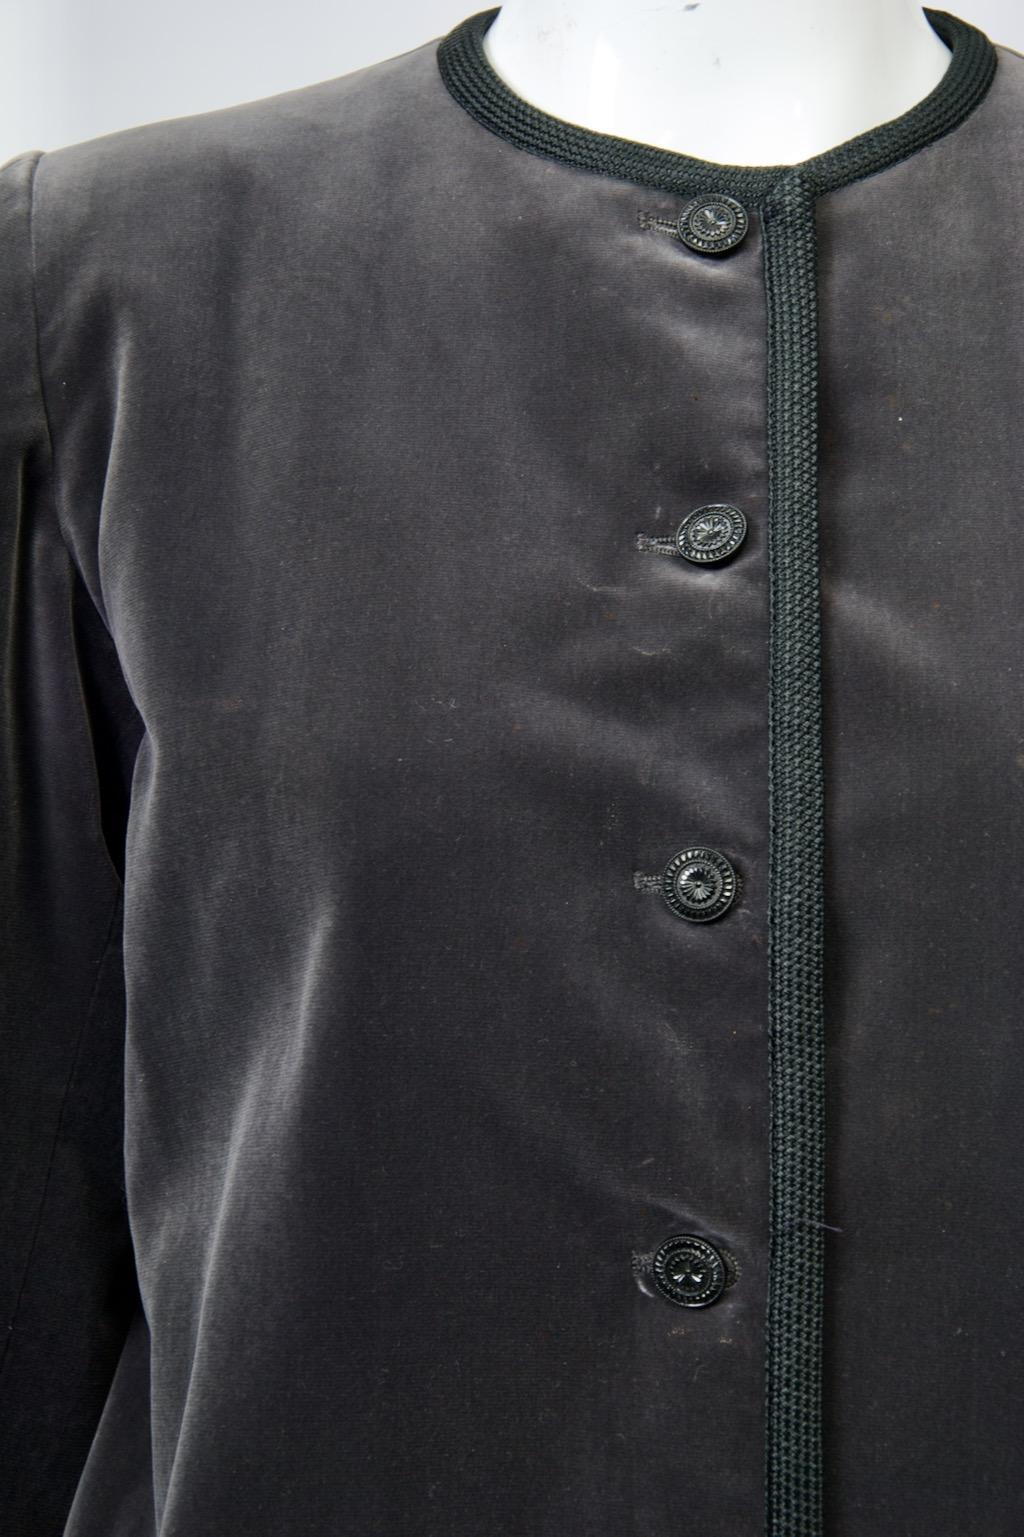 Veste en velours gris anthracite rive gauche d'Yves Saint Laurent, vers la fin des années 1970-début des années 1980, bordée d'un galon noir sur tous les côtés. La veste sans col est raccourcie et comporte des manches étroites et cinq boutons de